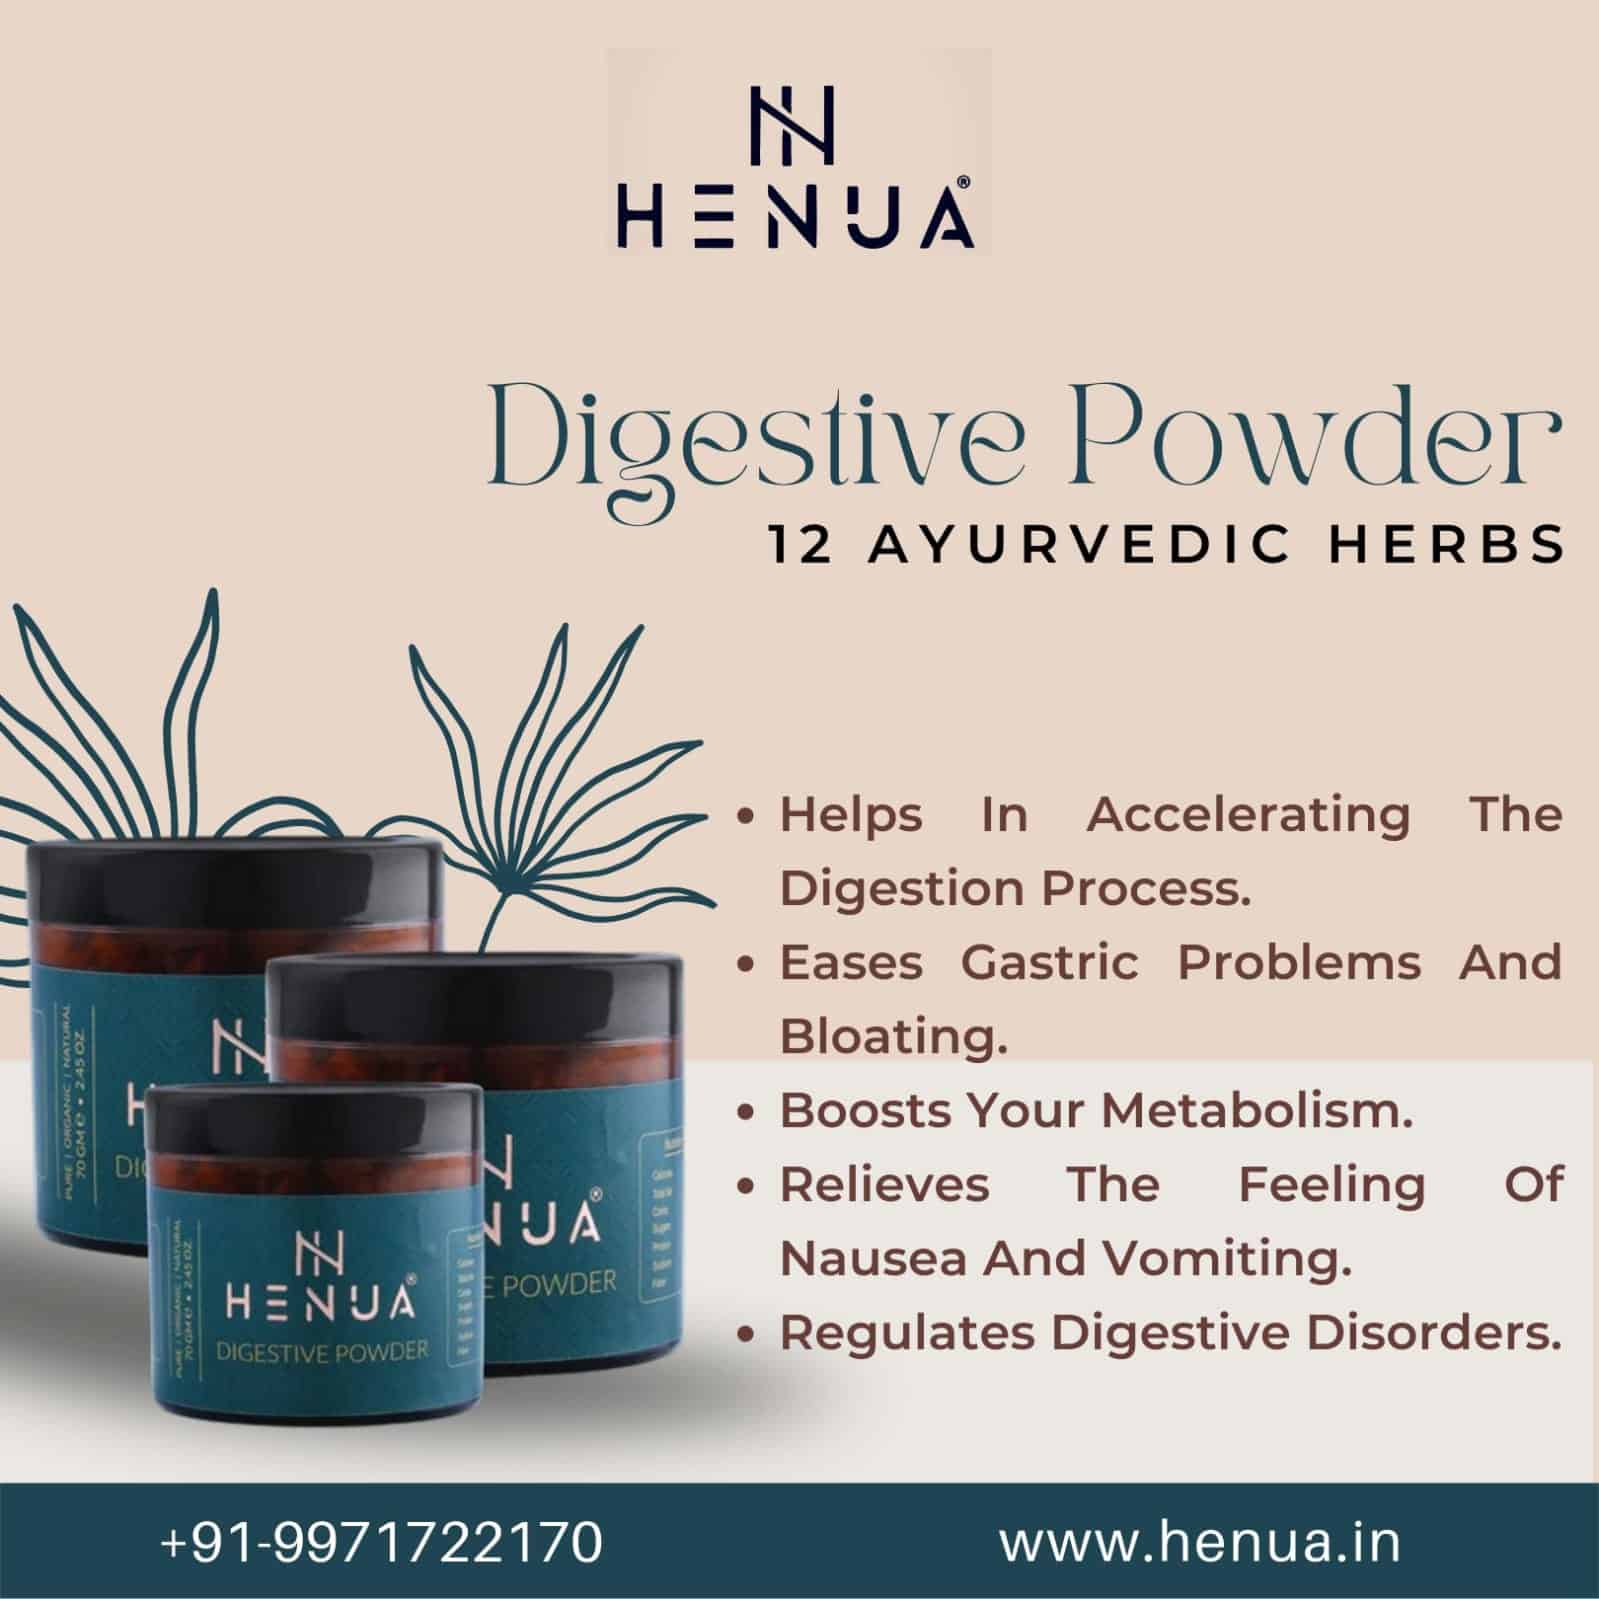 With-Henua-Digestive-Powder-Make-Digestion-Easy